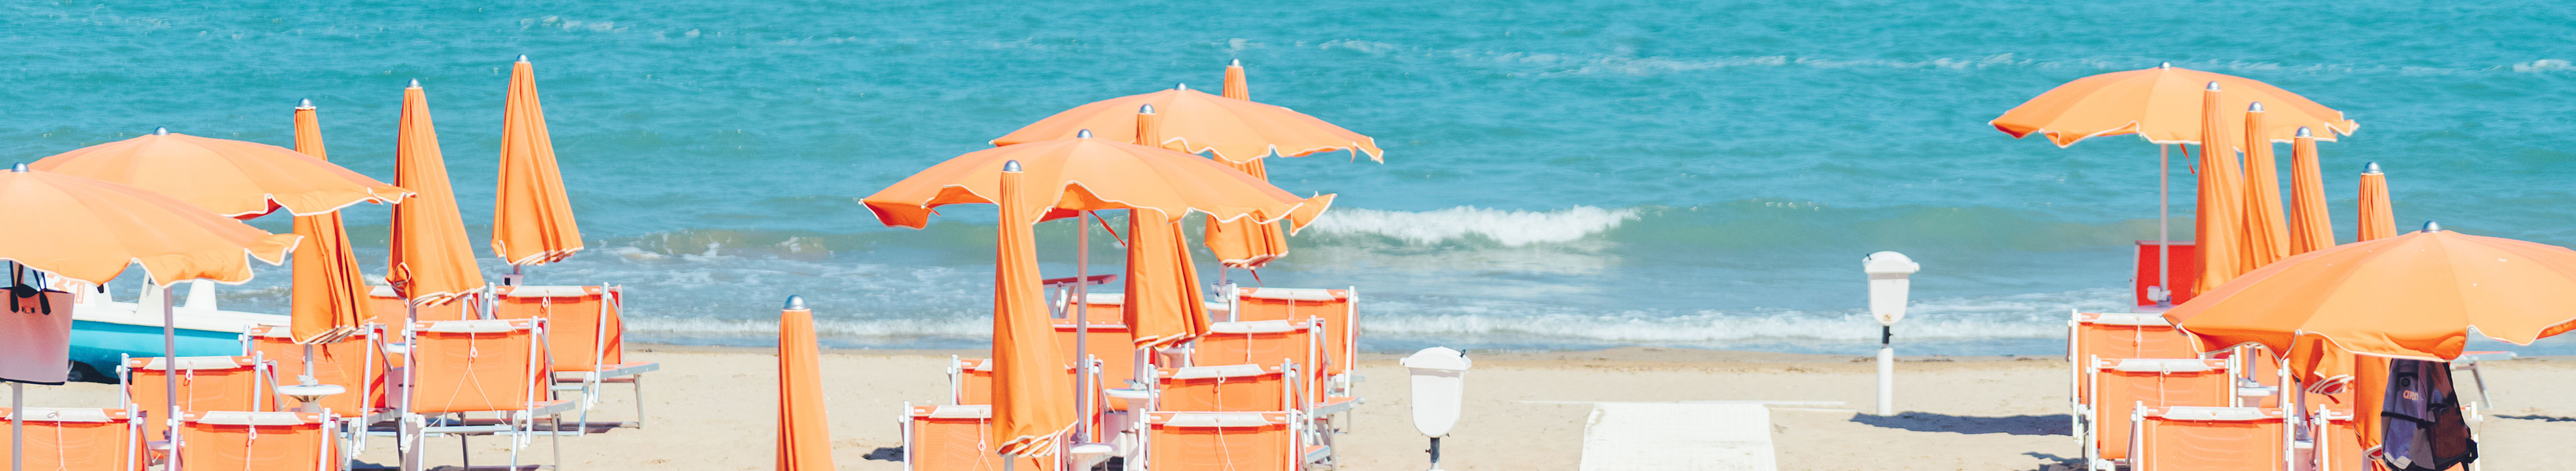 Strand mit Sonnenschirmen und Liegen in Rimini